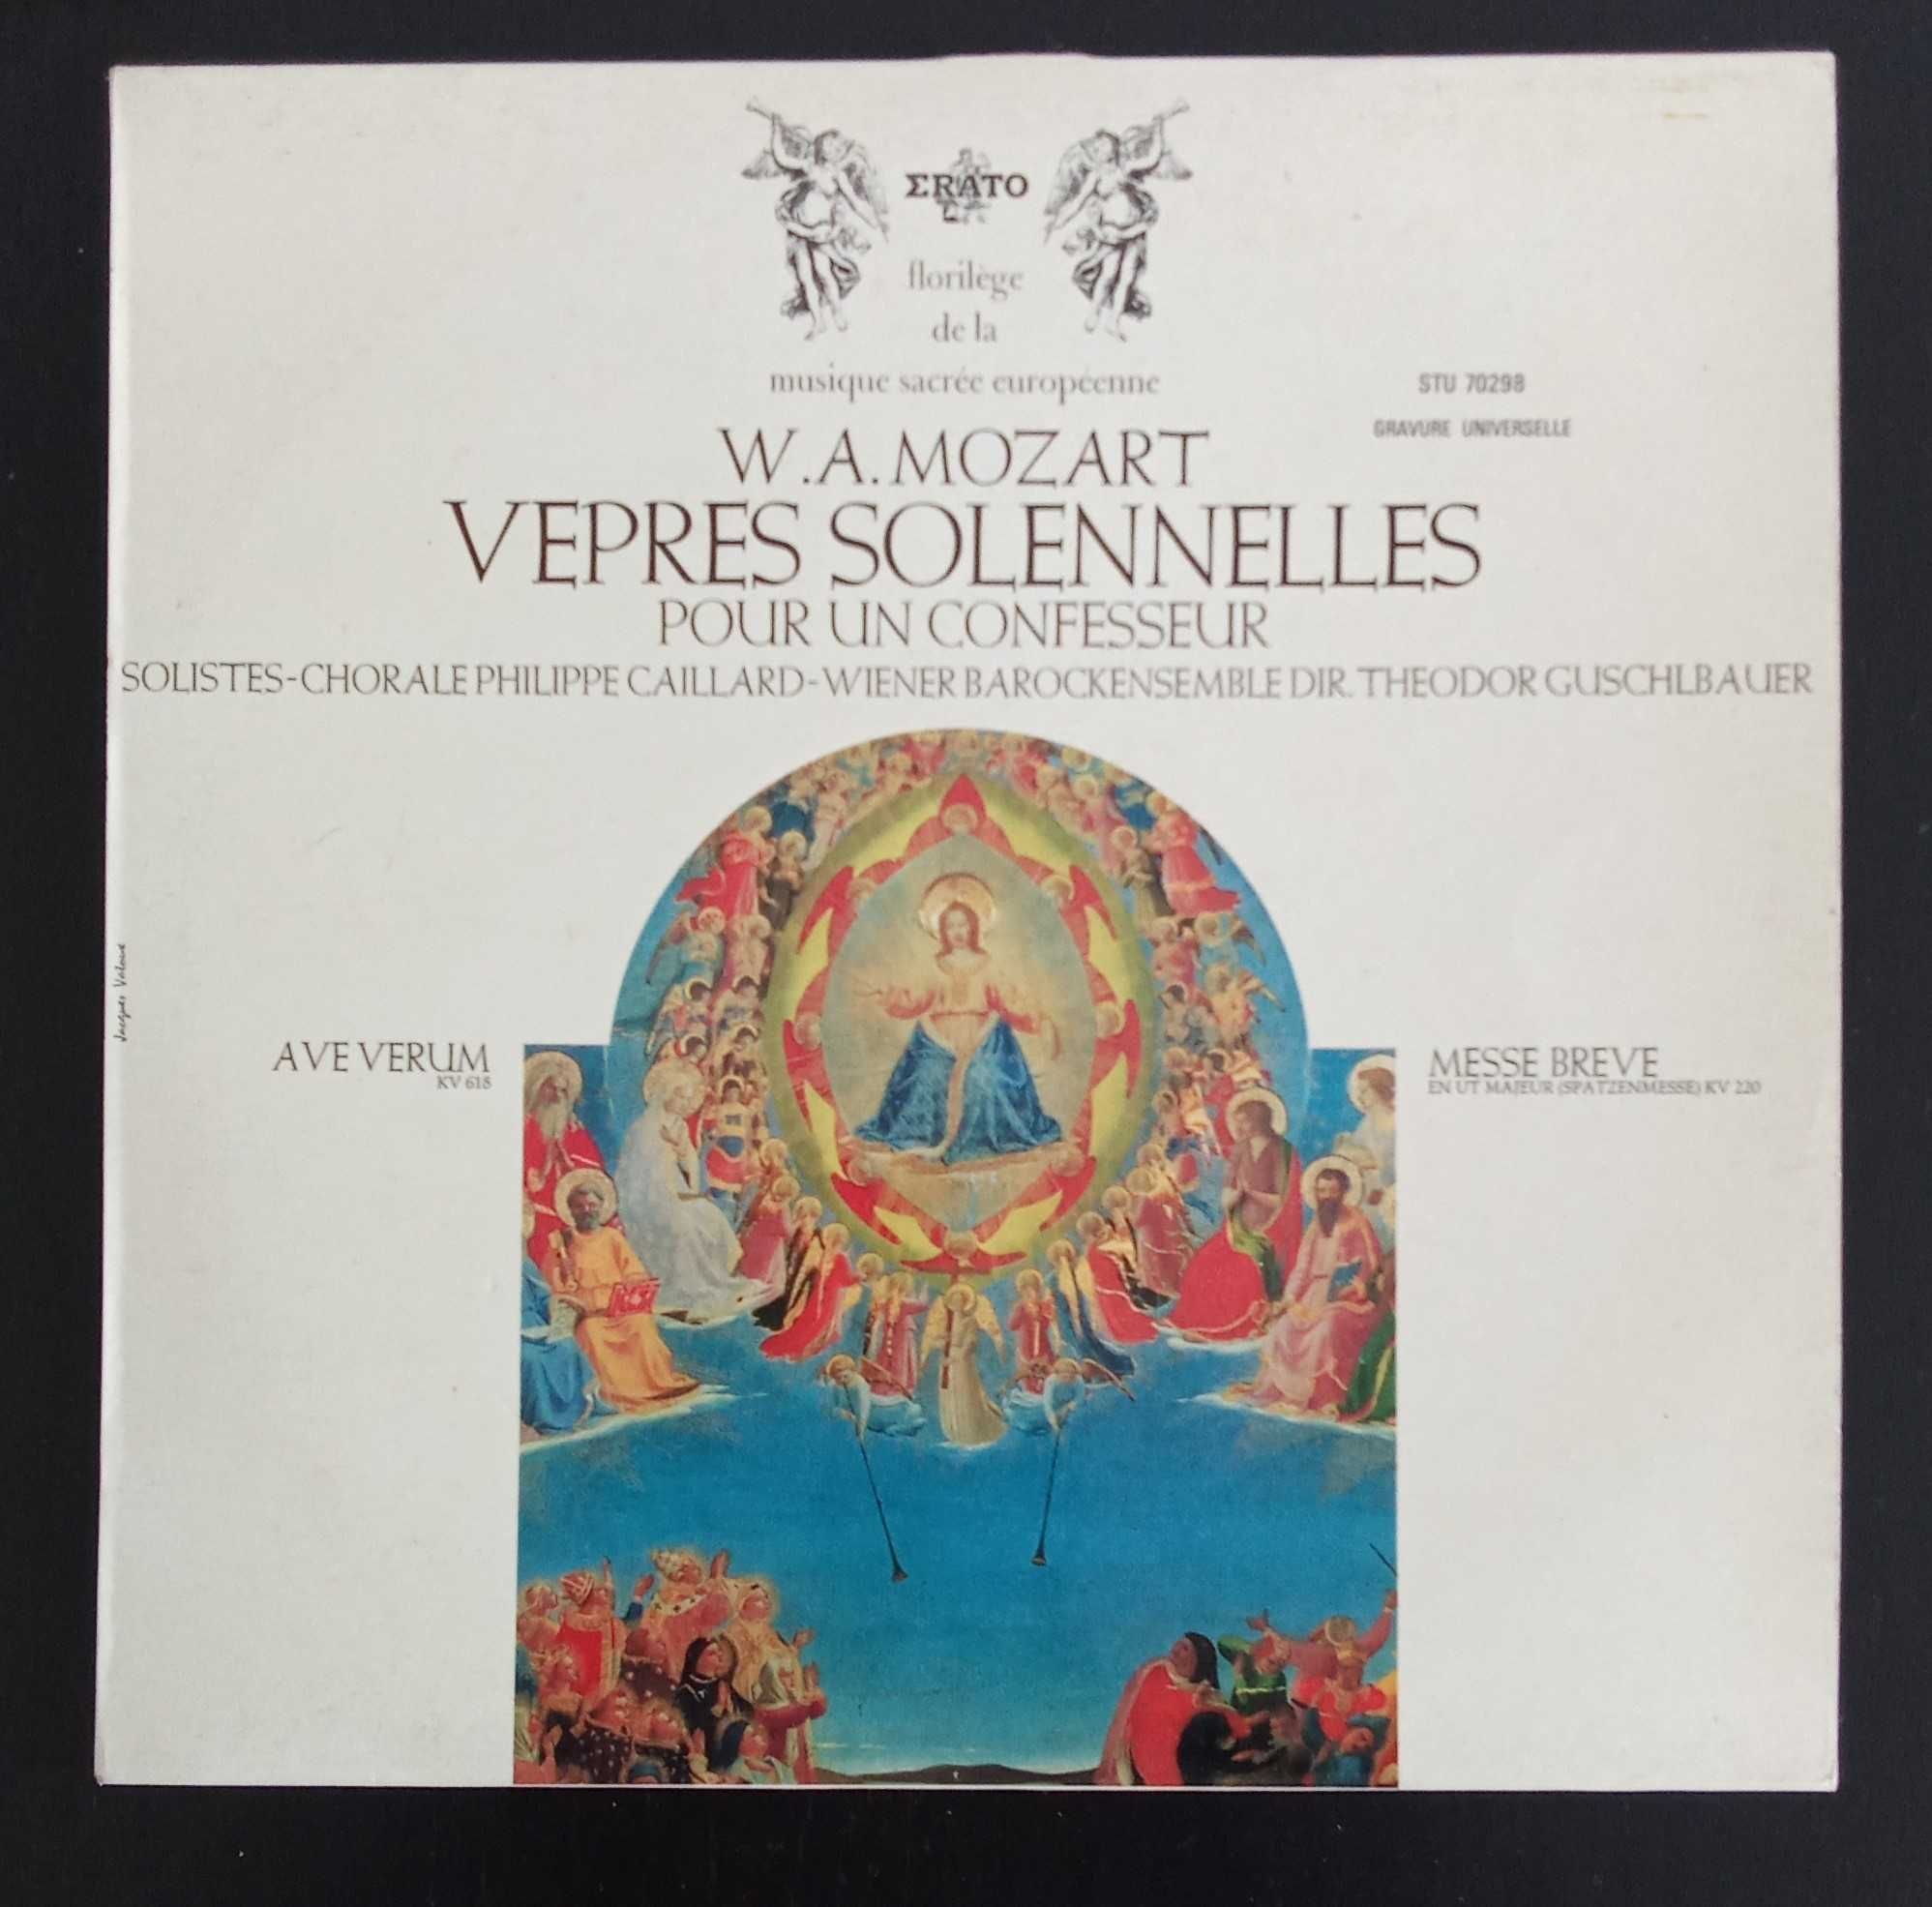 Vinyl LP Mozart - Vepres solennelles pour un confesseur